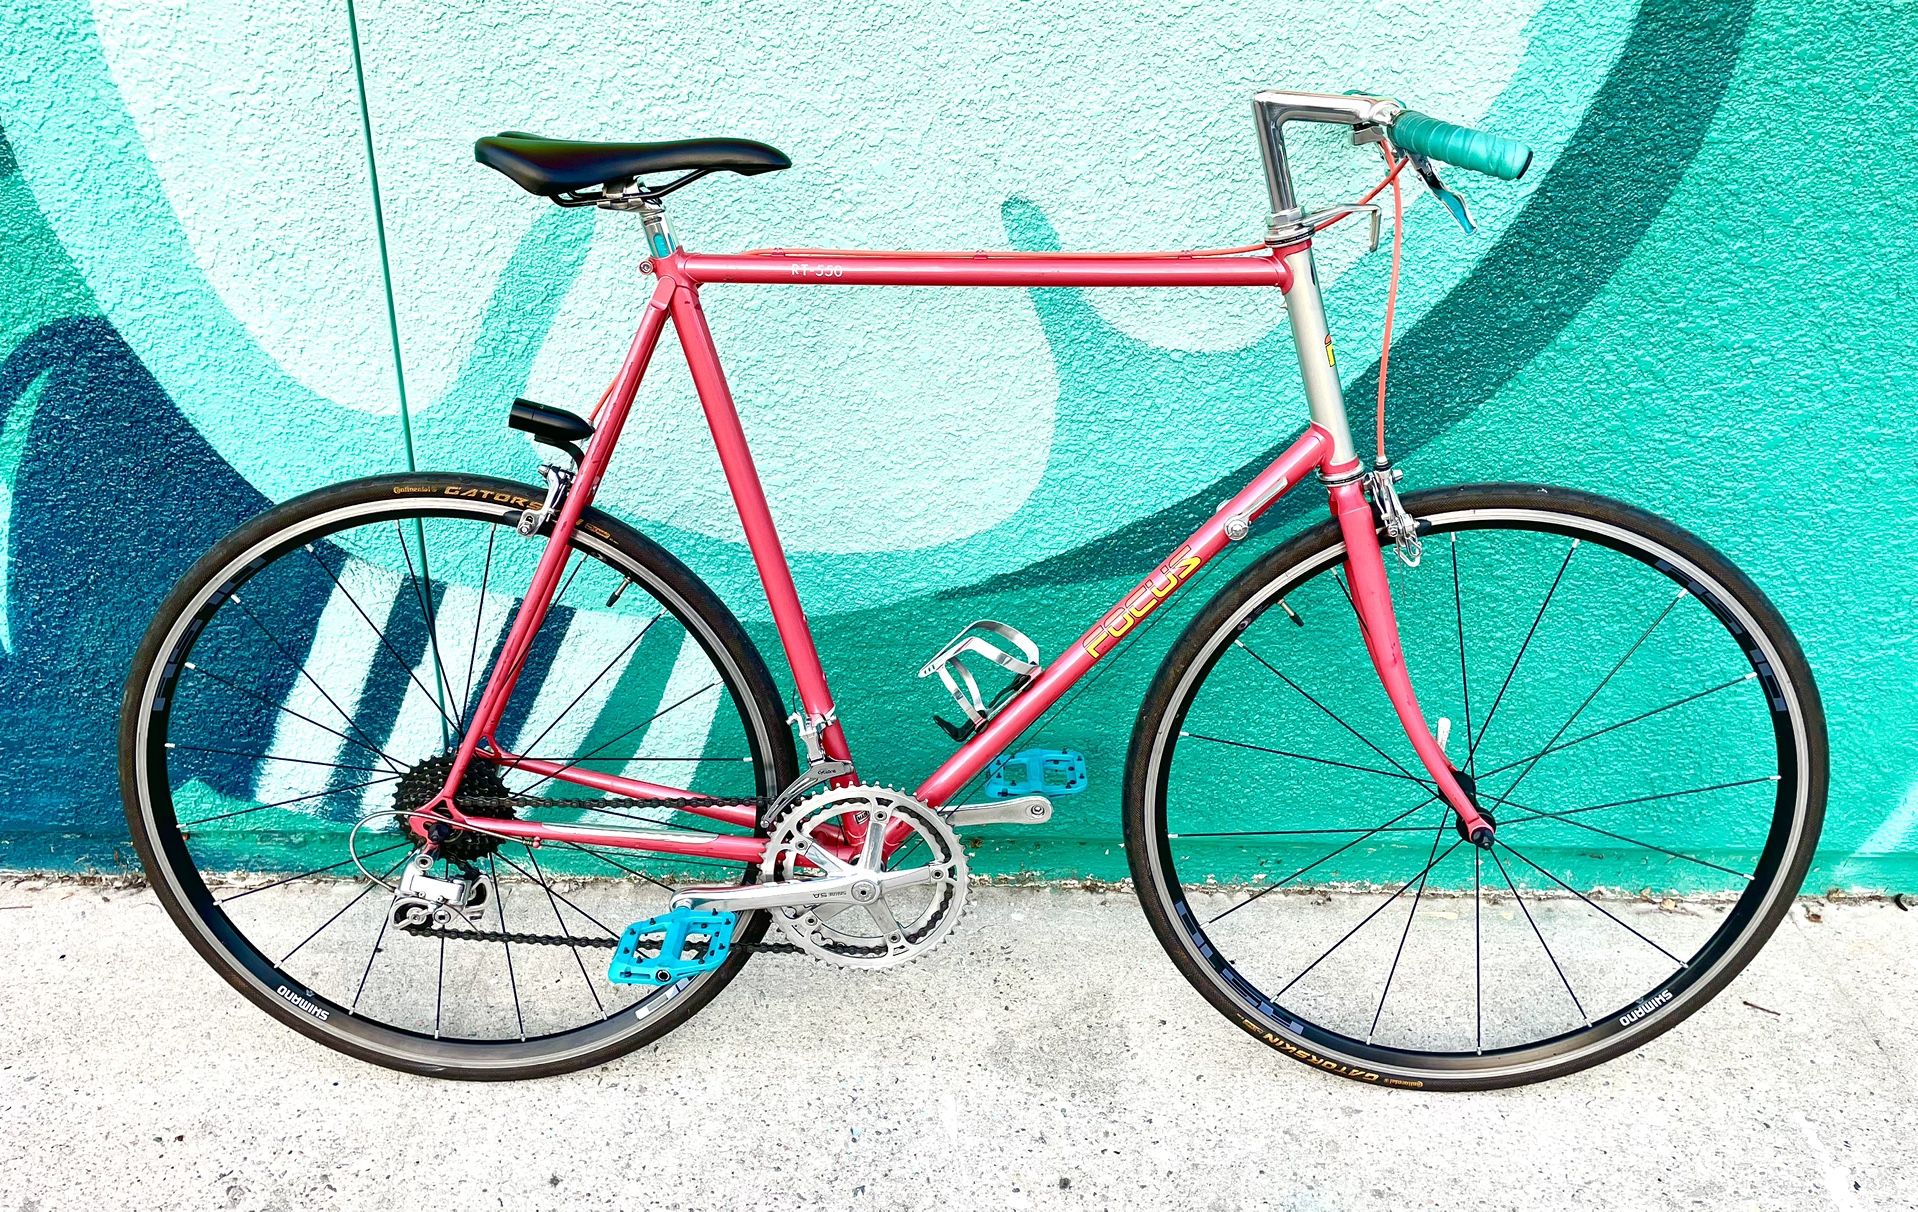 1984 Focus Road Bike